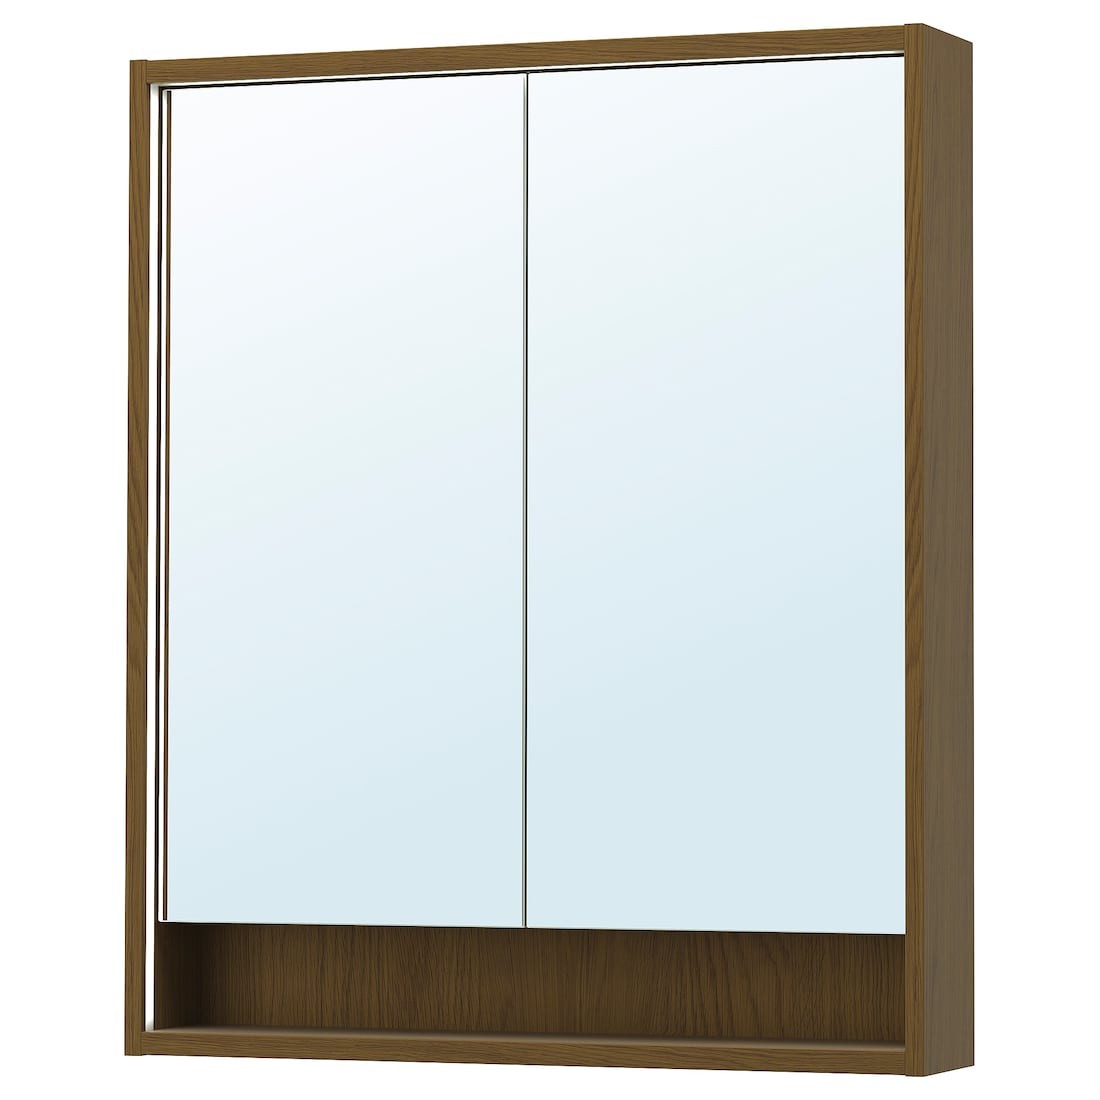 FAXÄLVEN Зеркальный шкаф со встроенной подсветкой, коричневая имитация дуб, 80x15x95 см